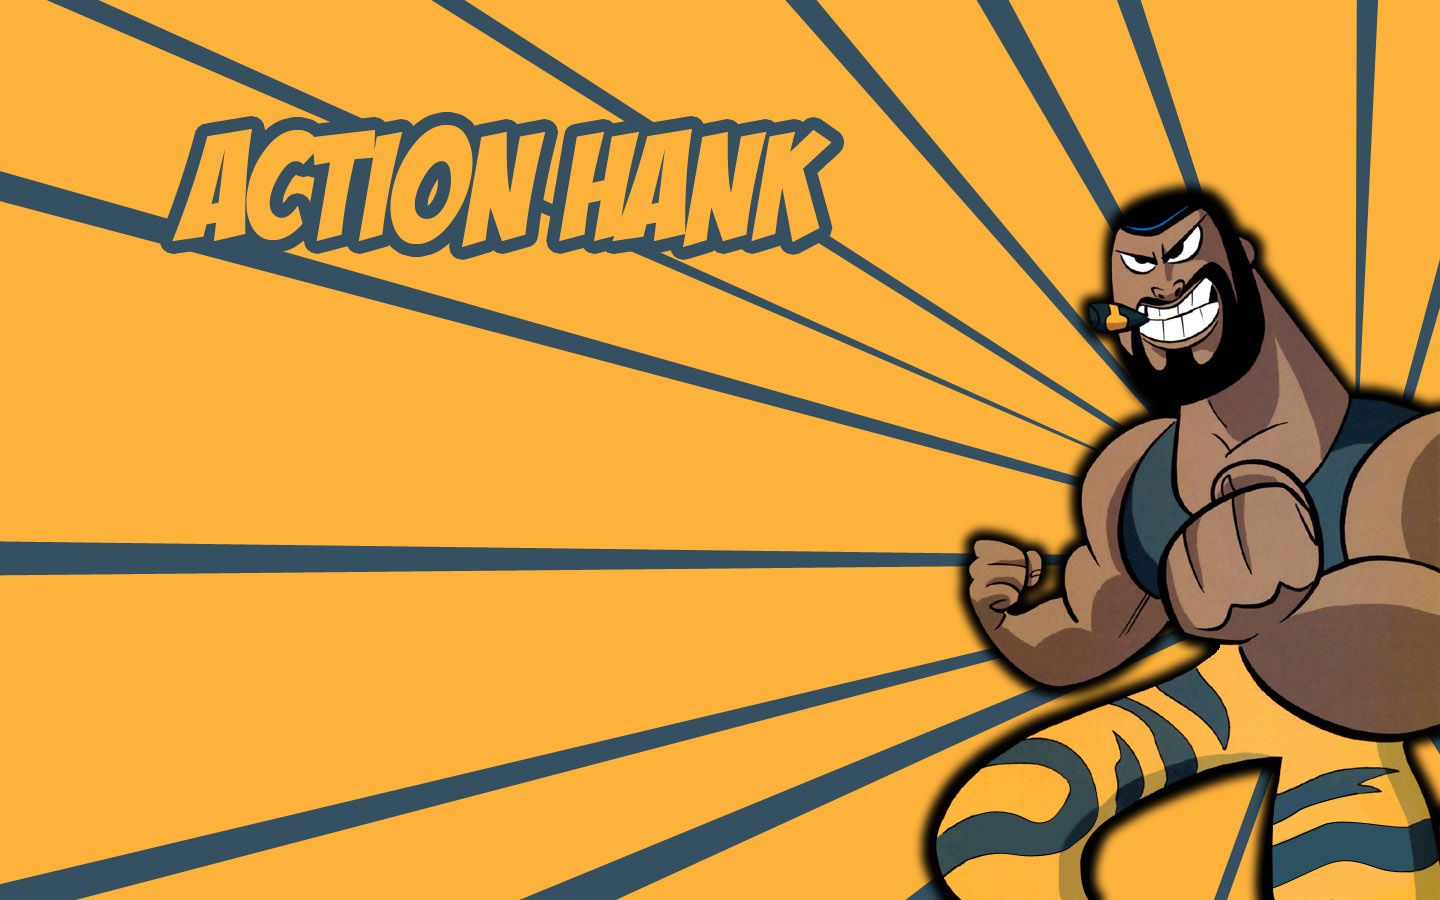 Action hank cartoon network dexters laboratory wallpaper ...